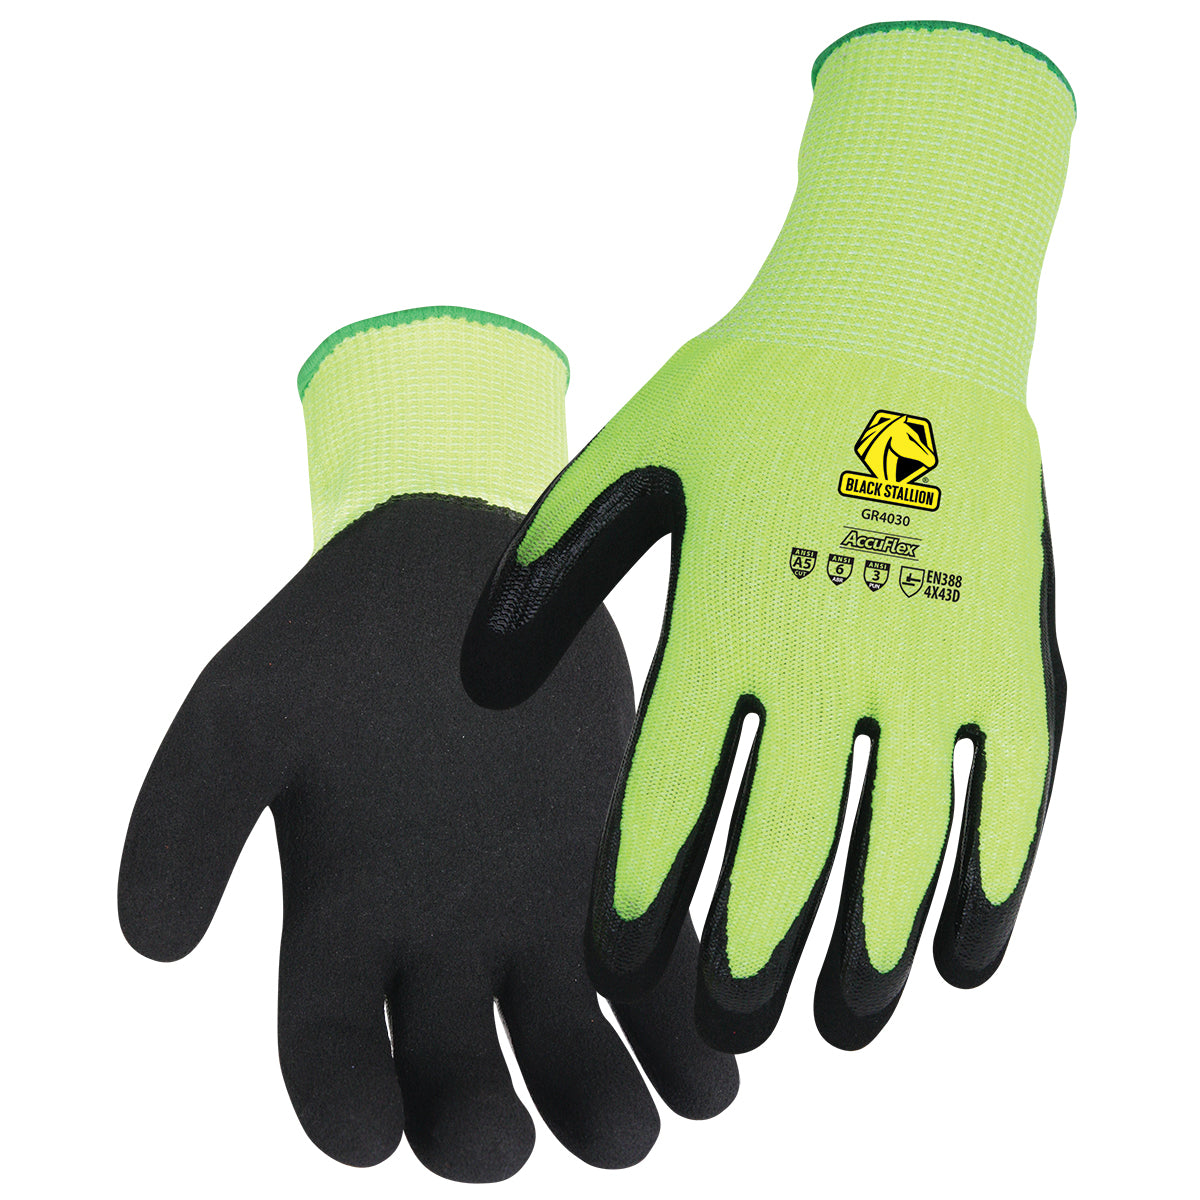 A5 Cut Resistant Sandy Nitrile Coated Hi-Vis Hppe Blend Glove - GR4030-HB